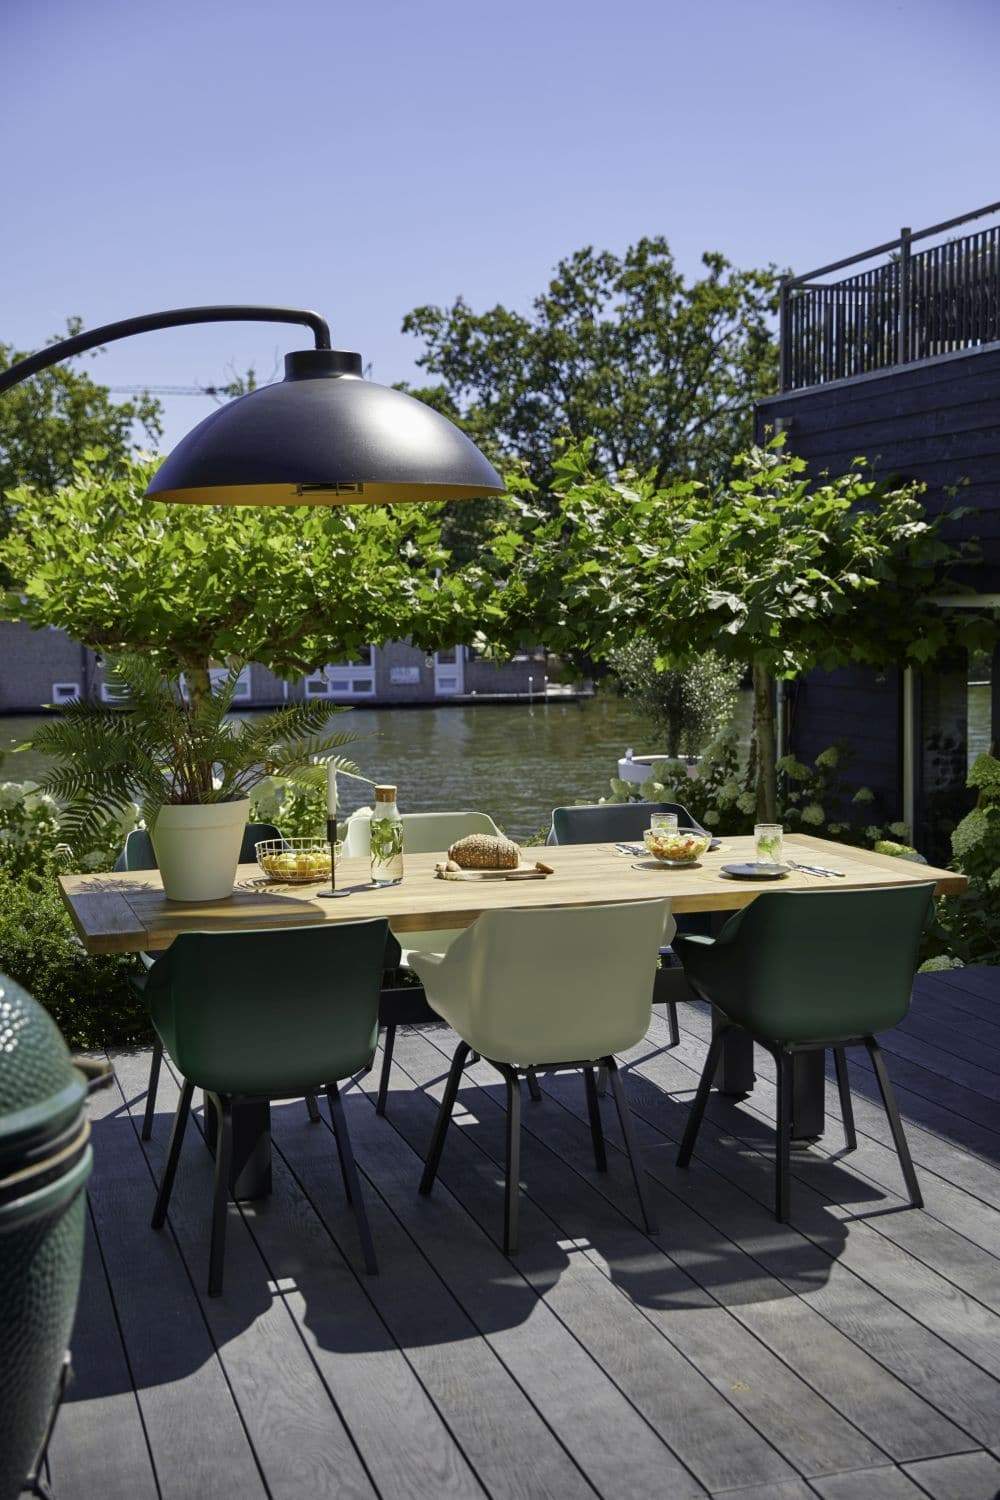 betrouwbaarheid reputatie lezing Summertime! De mooiste stoelen voor je terras - UW-tuin.nl